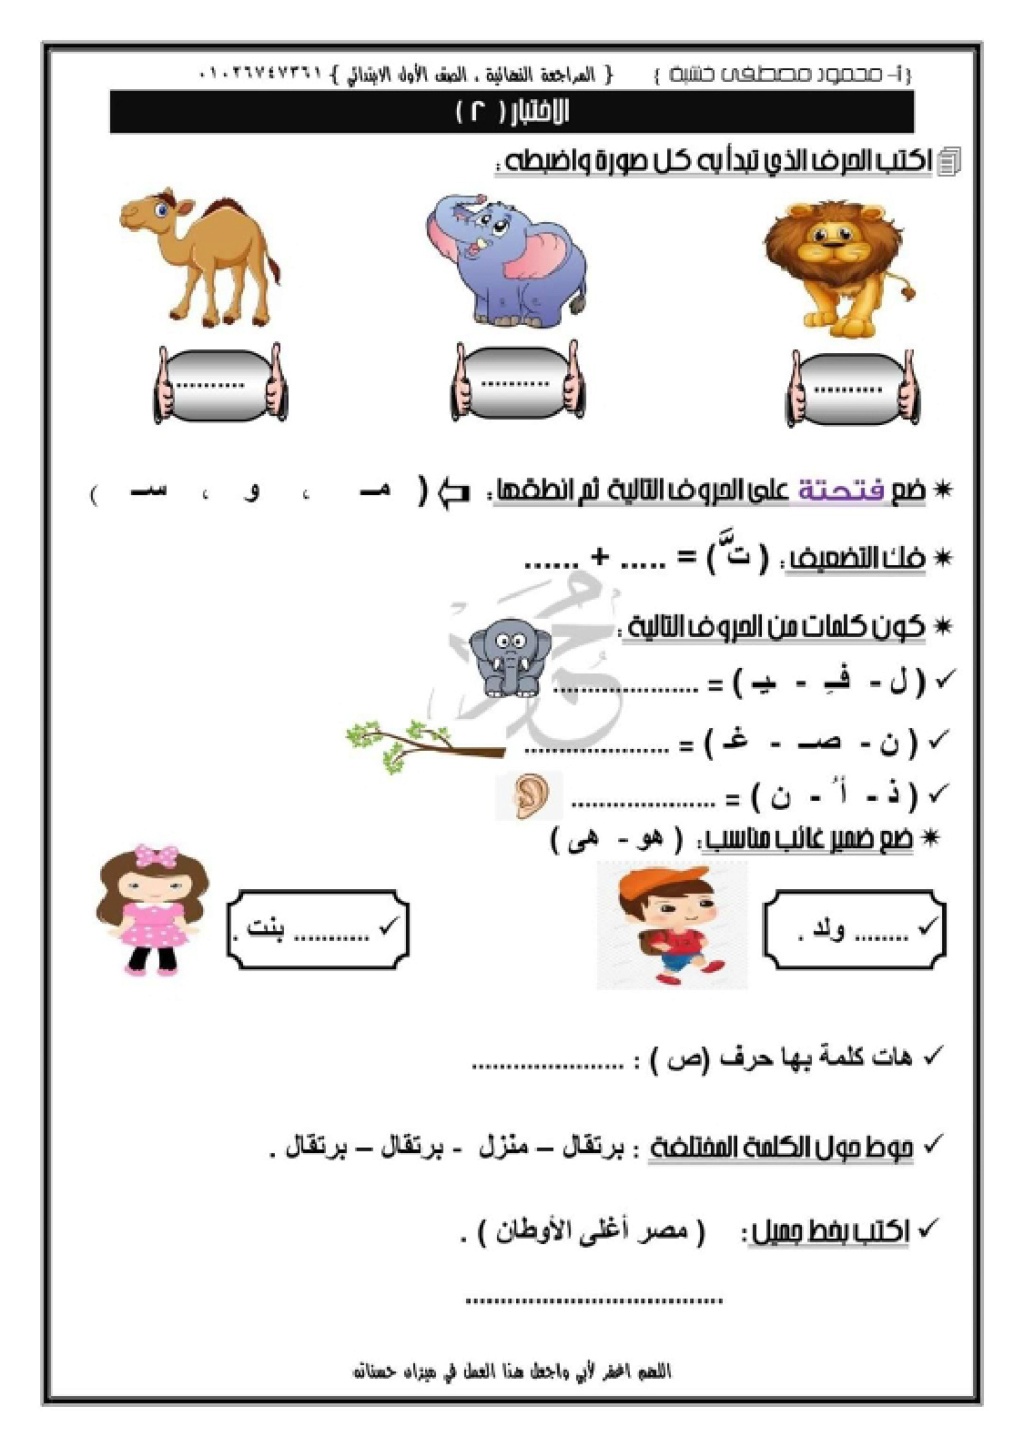 مراجعات لغة عربية للصف الاول الابتدائي في اللغة العربية 2021 Aayo_a13